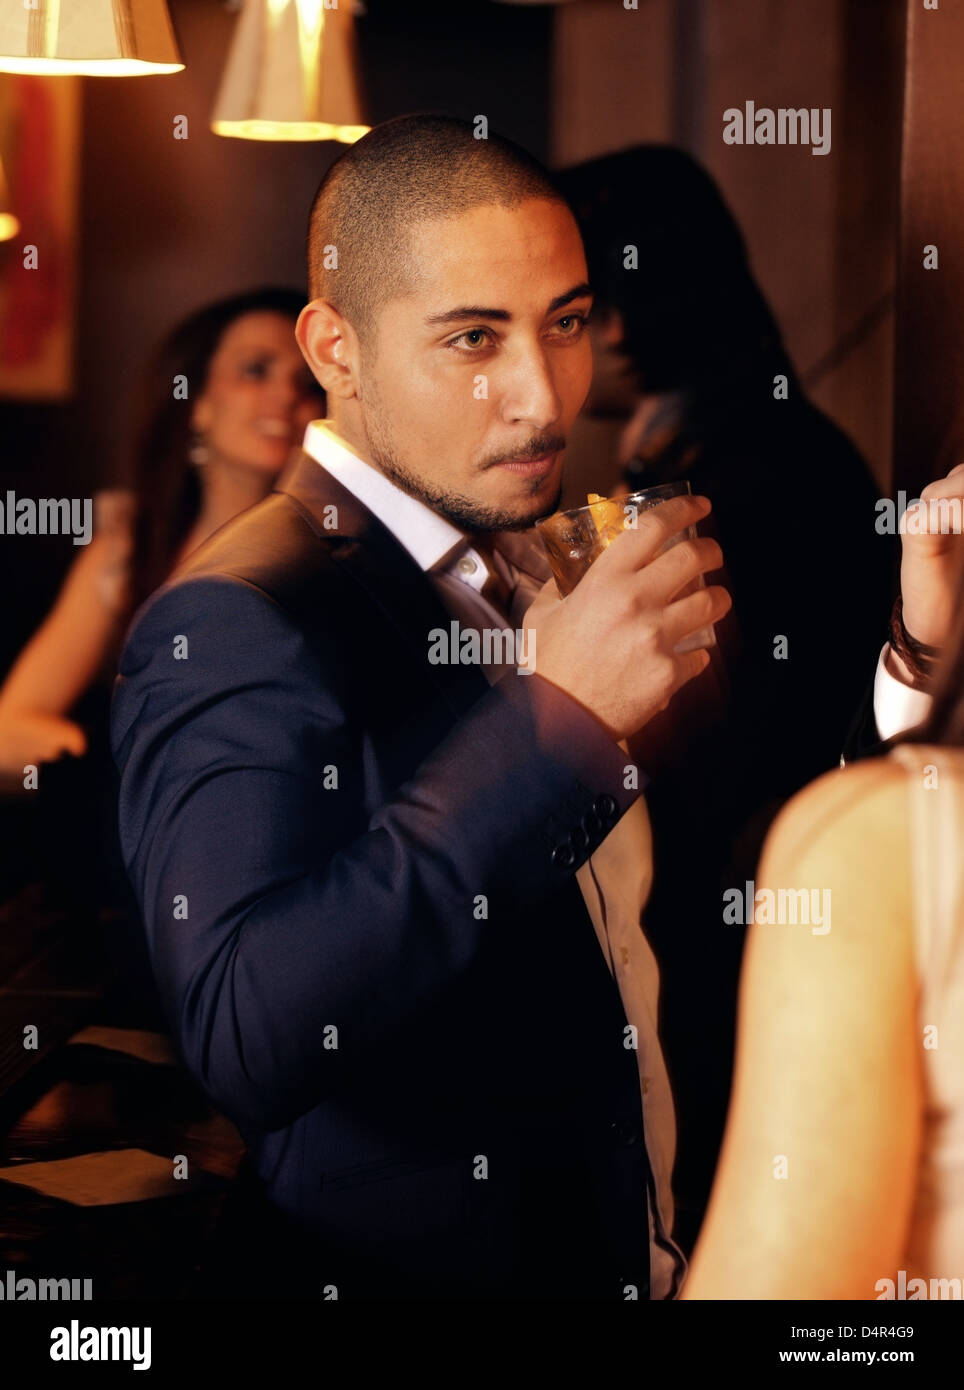 Porträt von einem Mann auf einer Party mit einem Glas Whisky Stockfoto